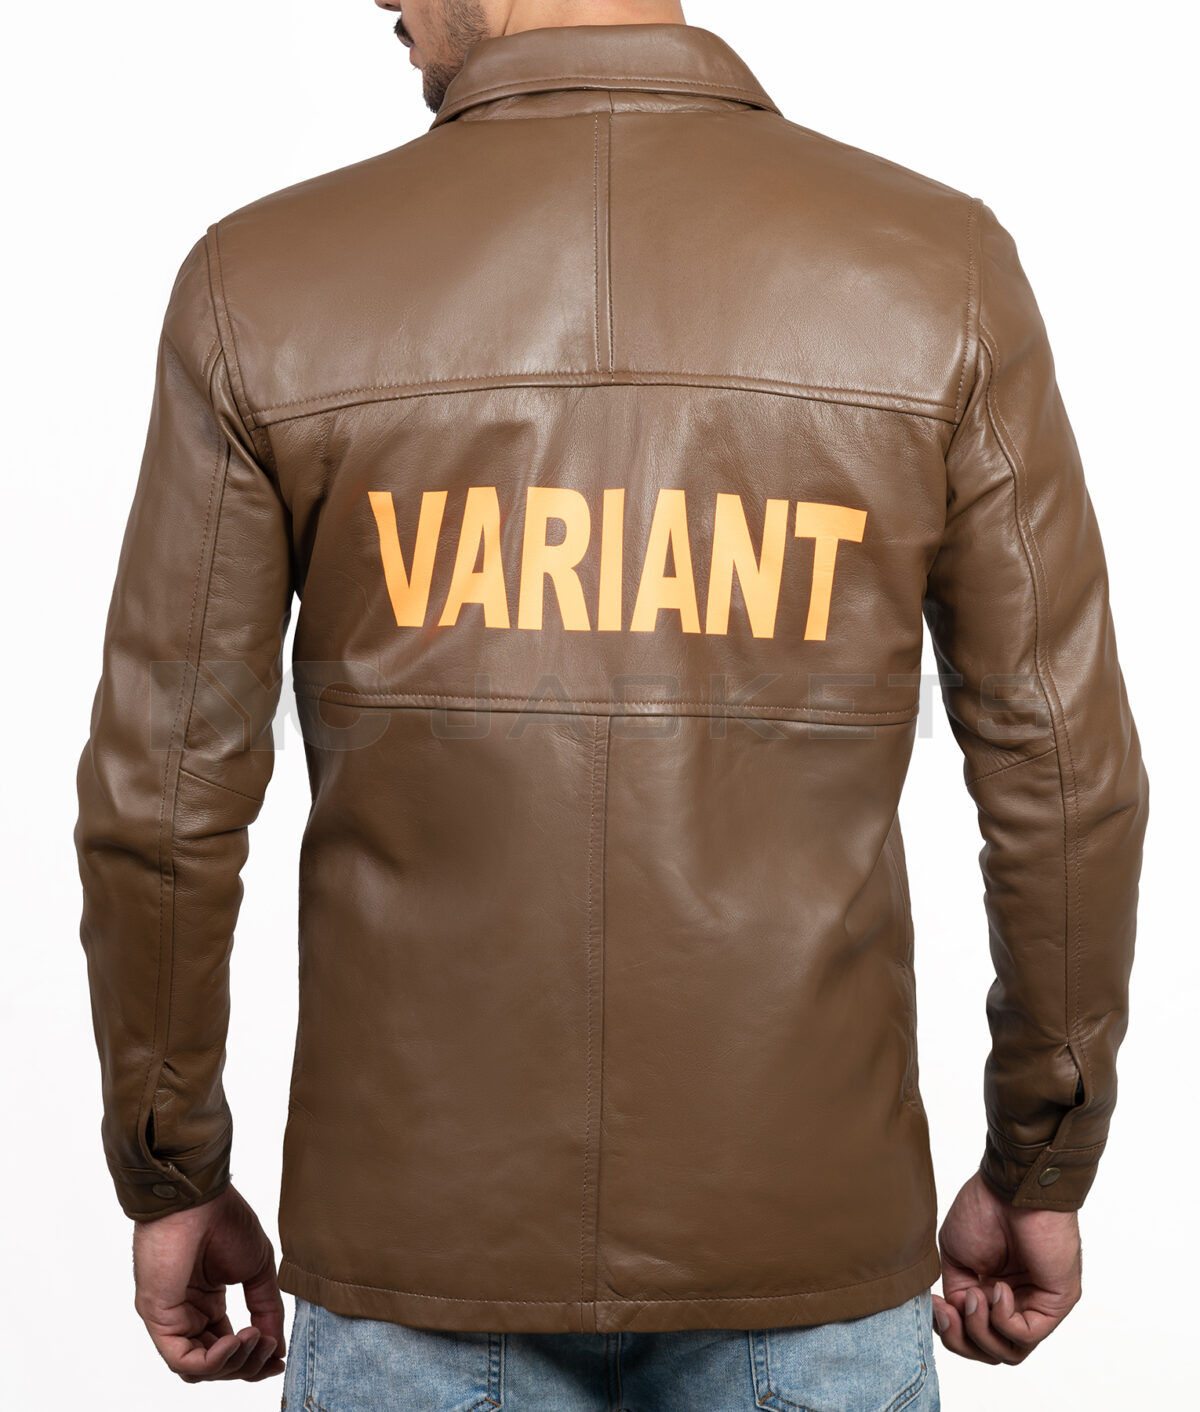 TVA Variant Jacket